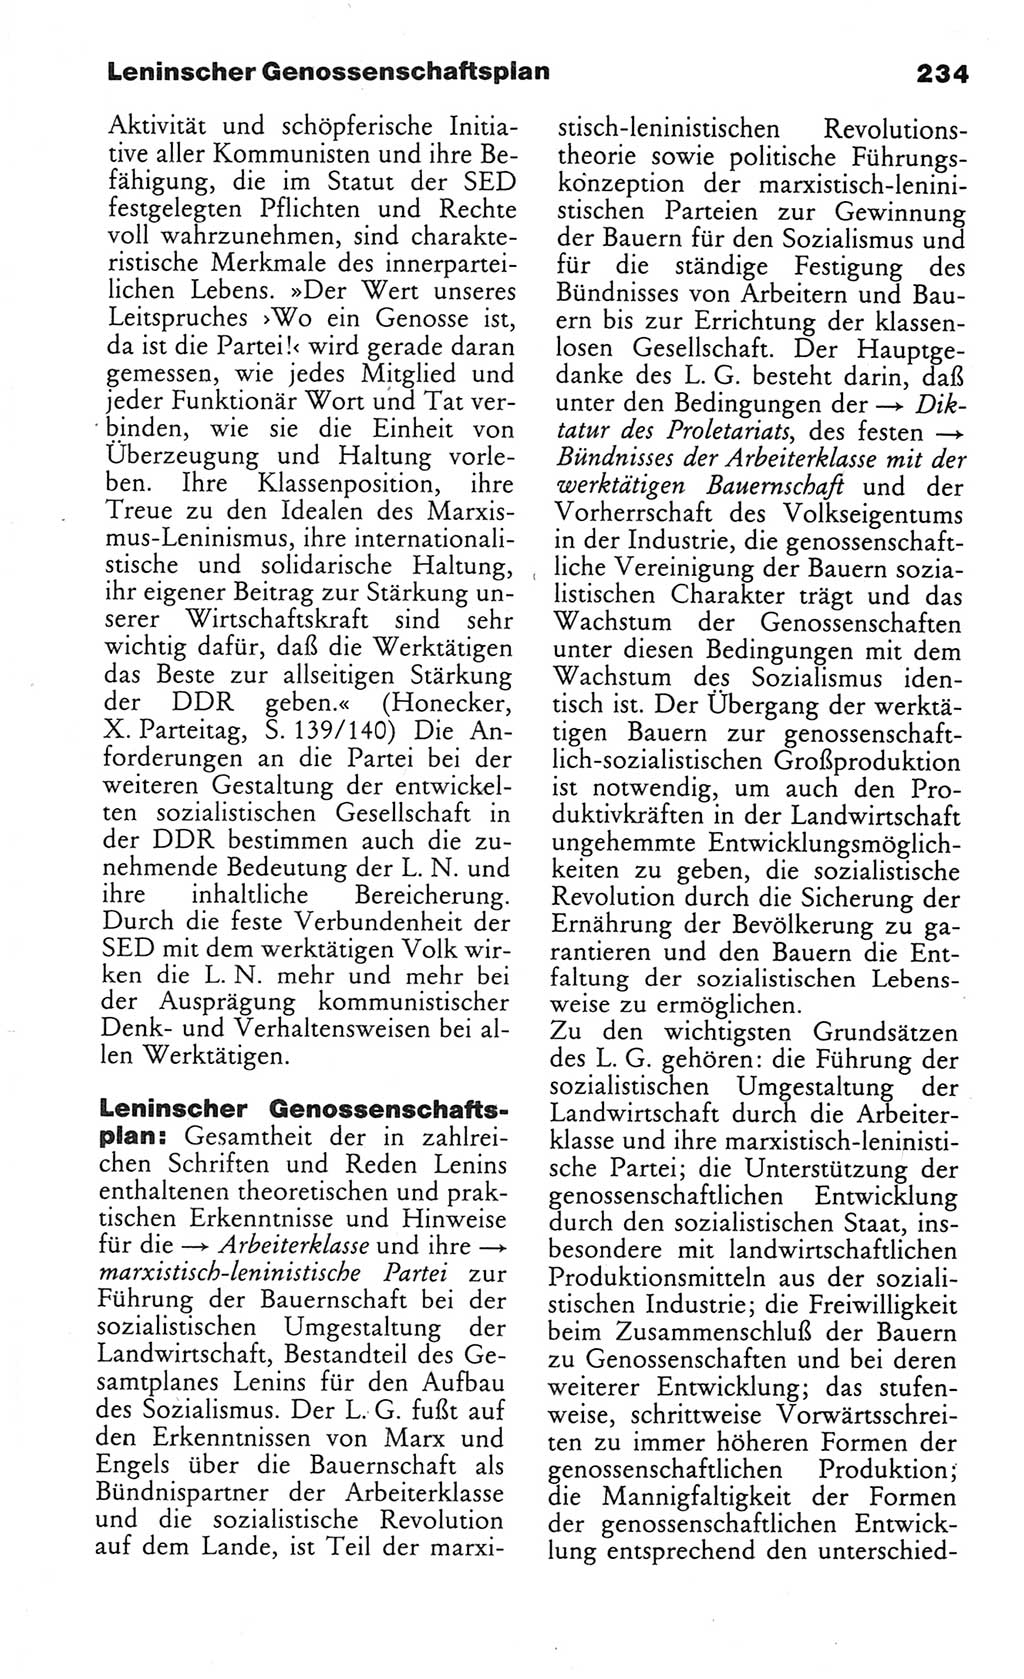 Wörterbuch des wissenschaftlichen Kommunismus [Deutsche Demokratische Republik (DDR)] 1984, Seite 234 (Wb. wiss. Komm. DDR 1984, S. 234)